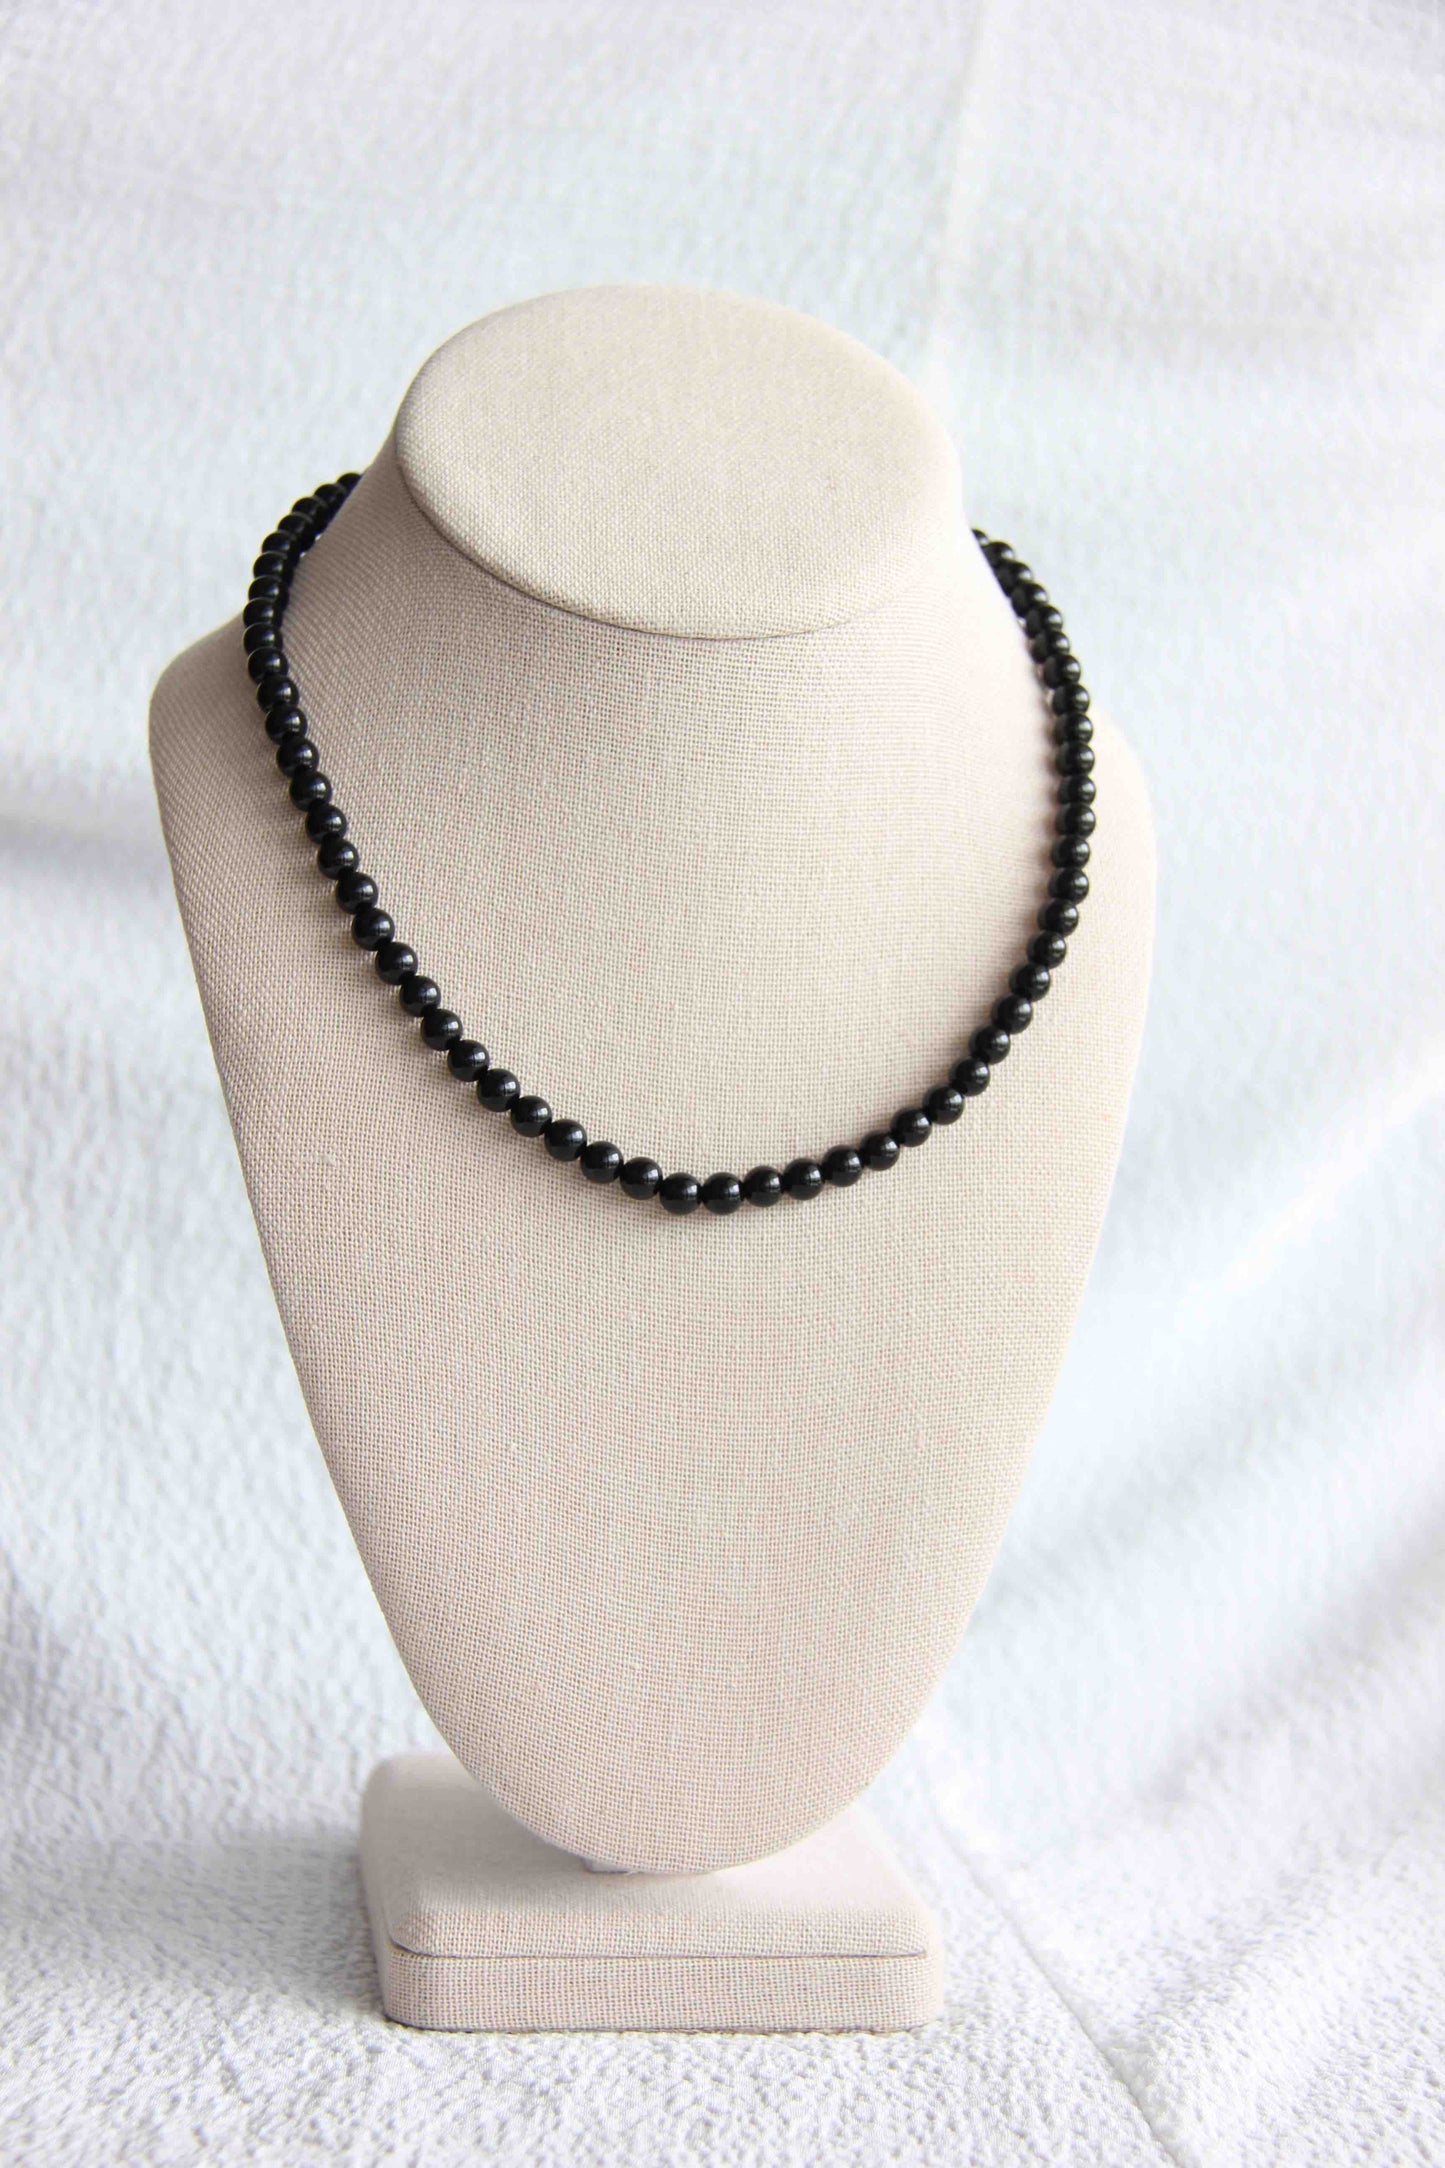 Onyx Necklace, Onyx Jewelry, Black Gemstone, Necklace, Onyx Necklace for Women